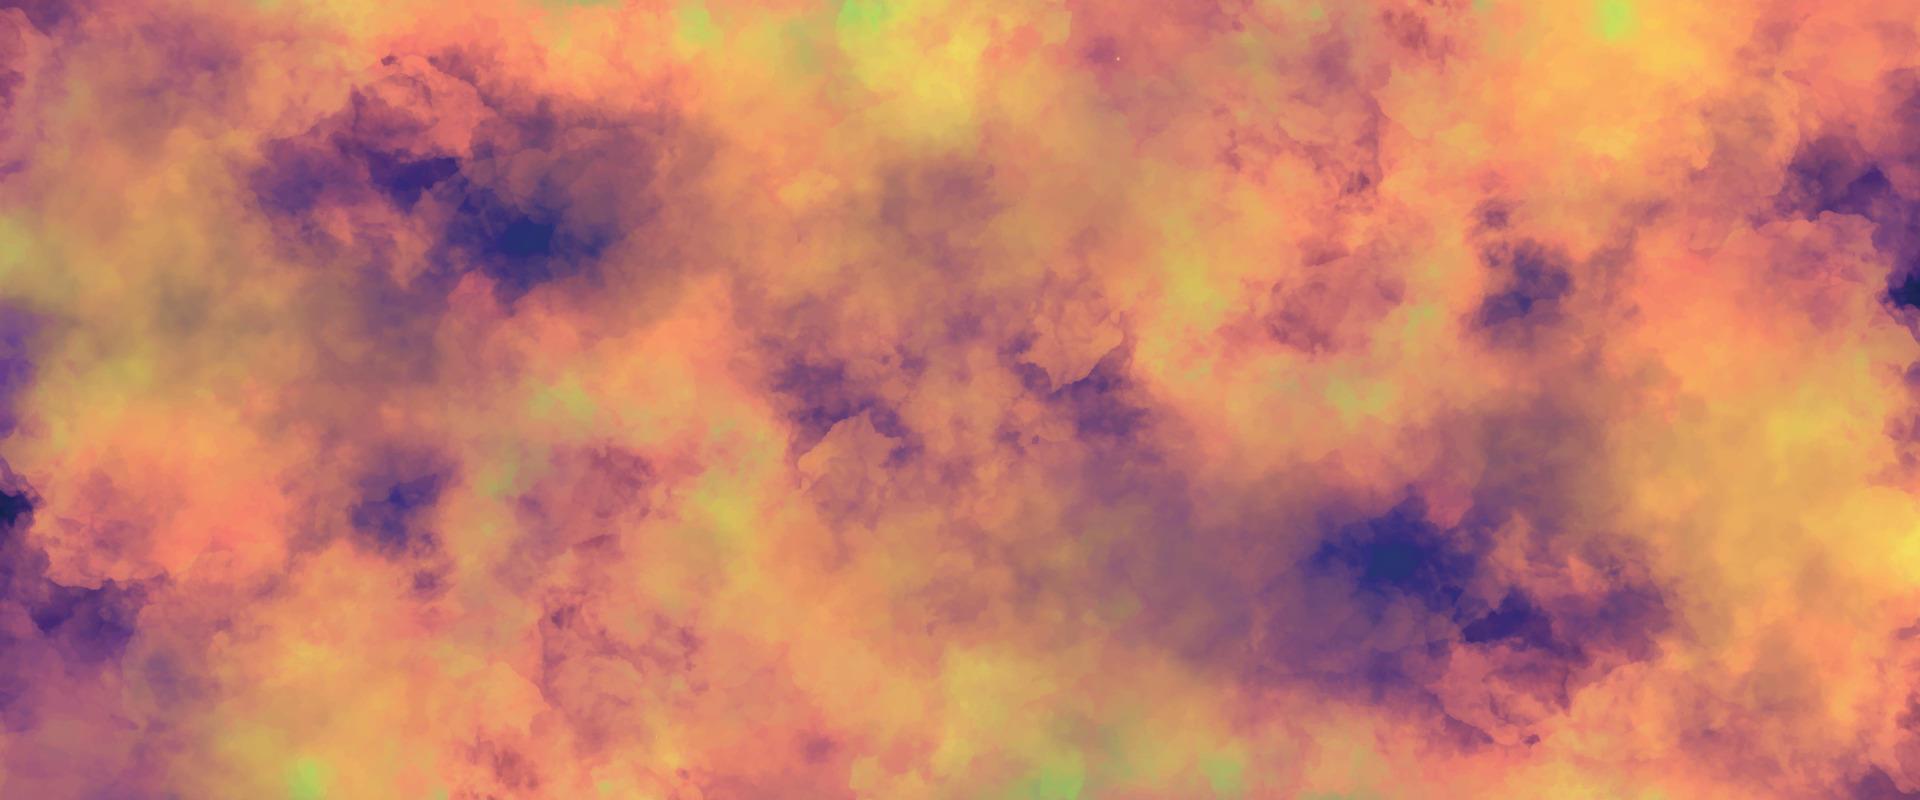 fondo colorido abstracto. Fondo de pintura colorida acuarela grunge. espacio exterior. fondo de escarcha y luces. nebulosa y estrellas en el espacio vector